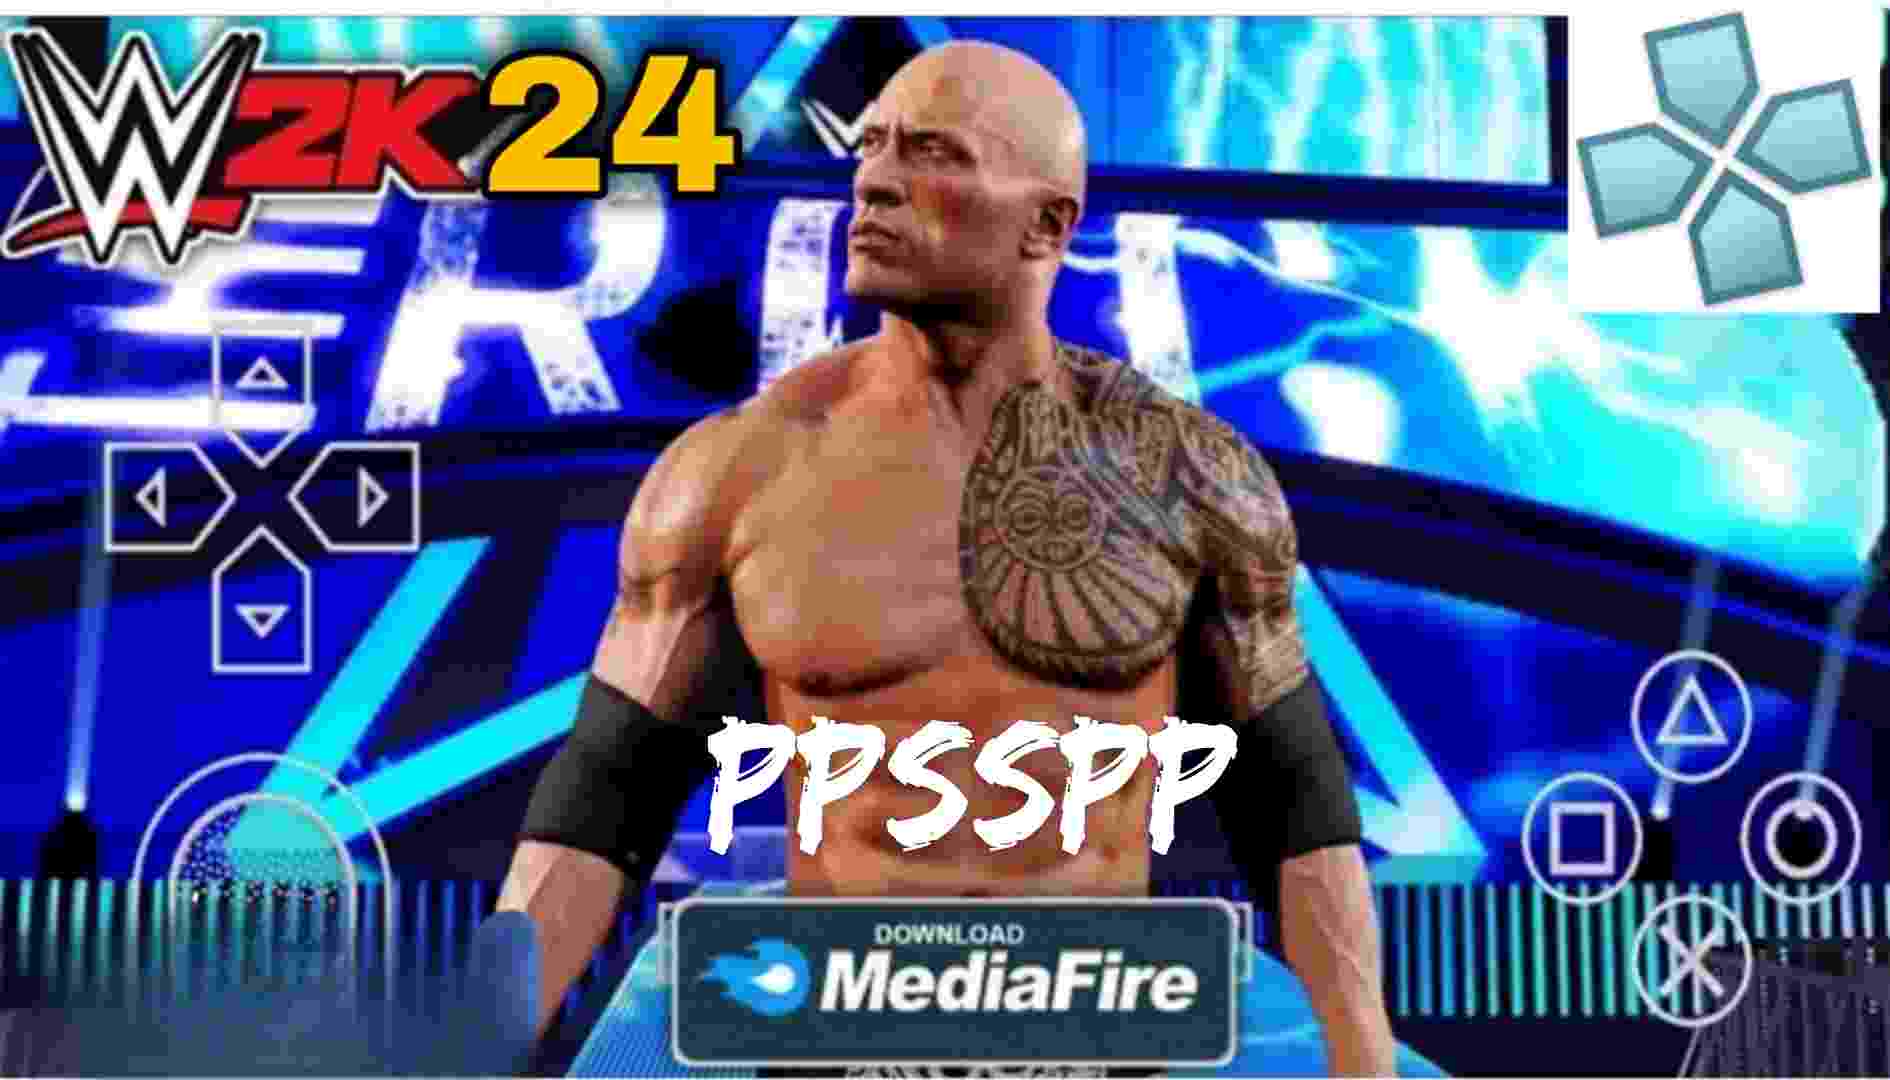 WWE 2K23 PPSSPP